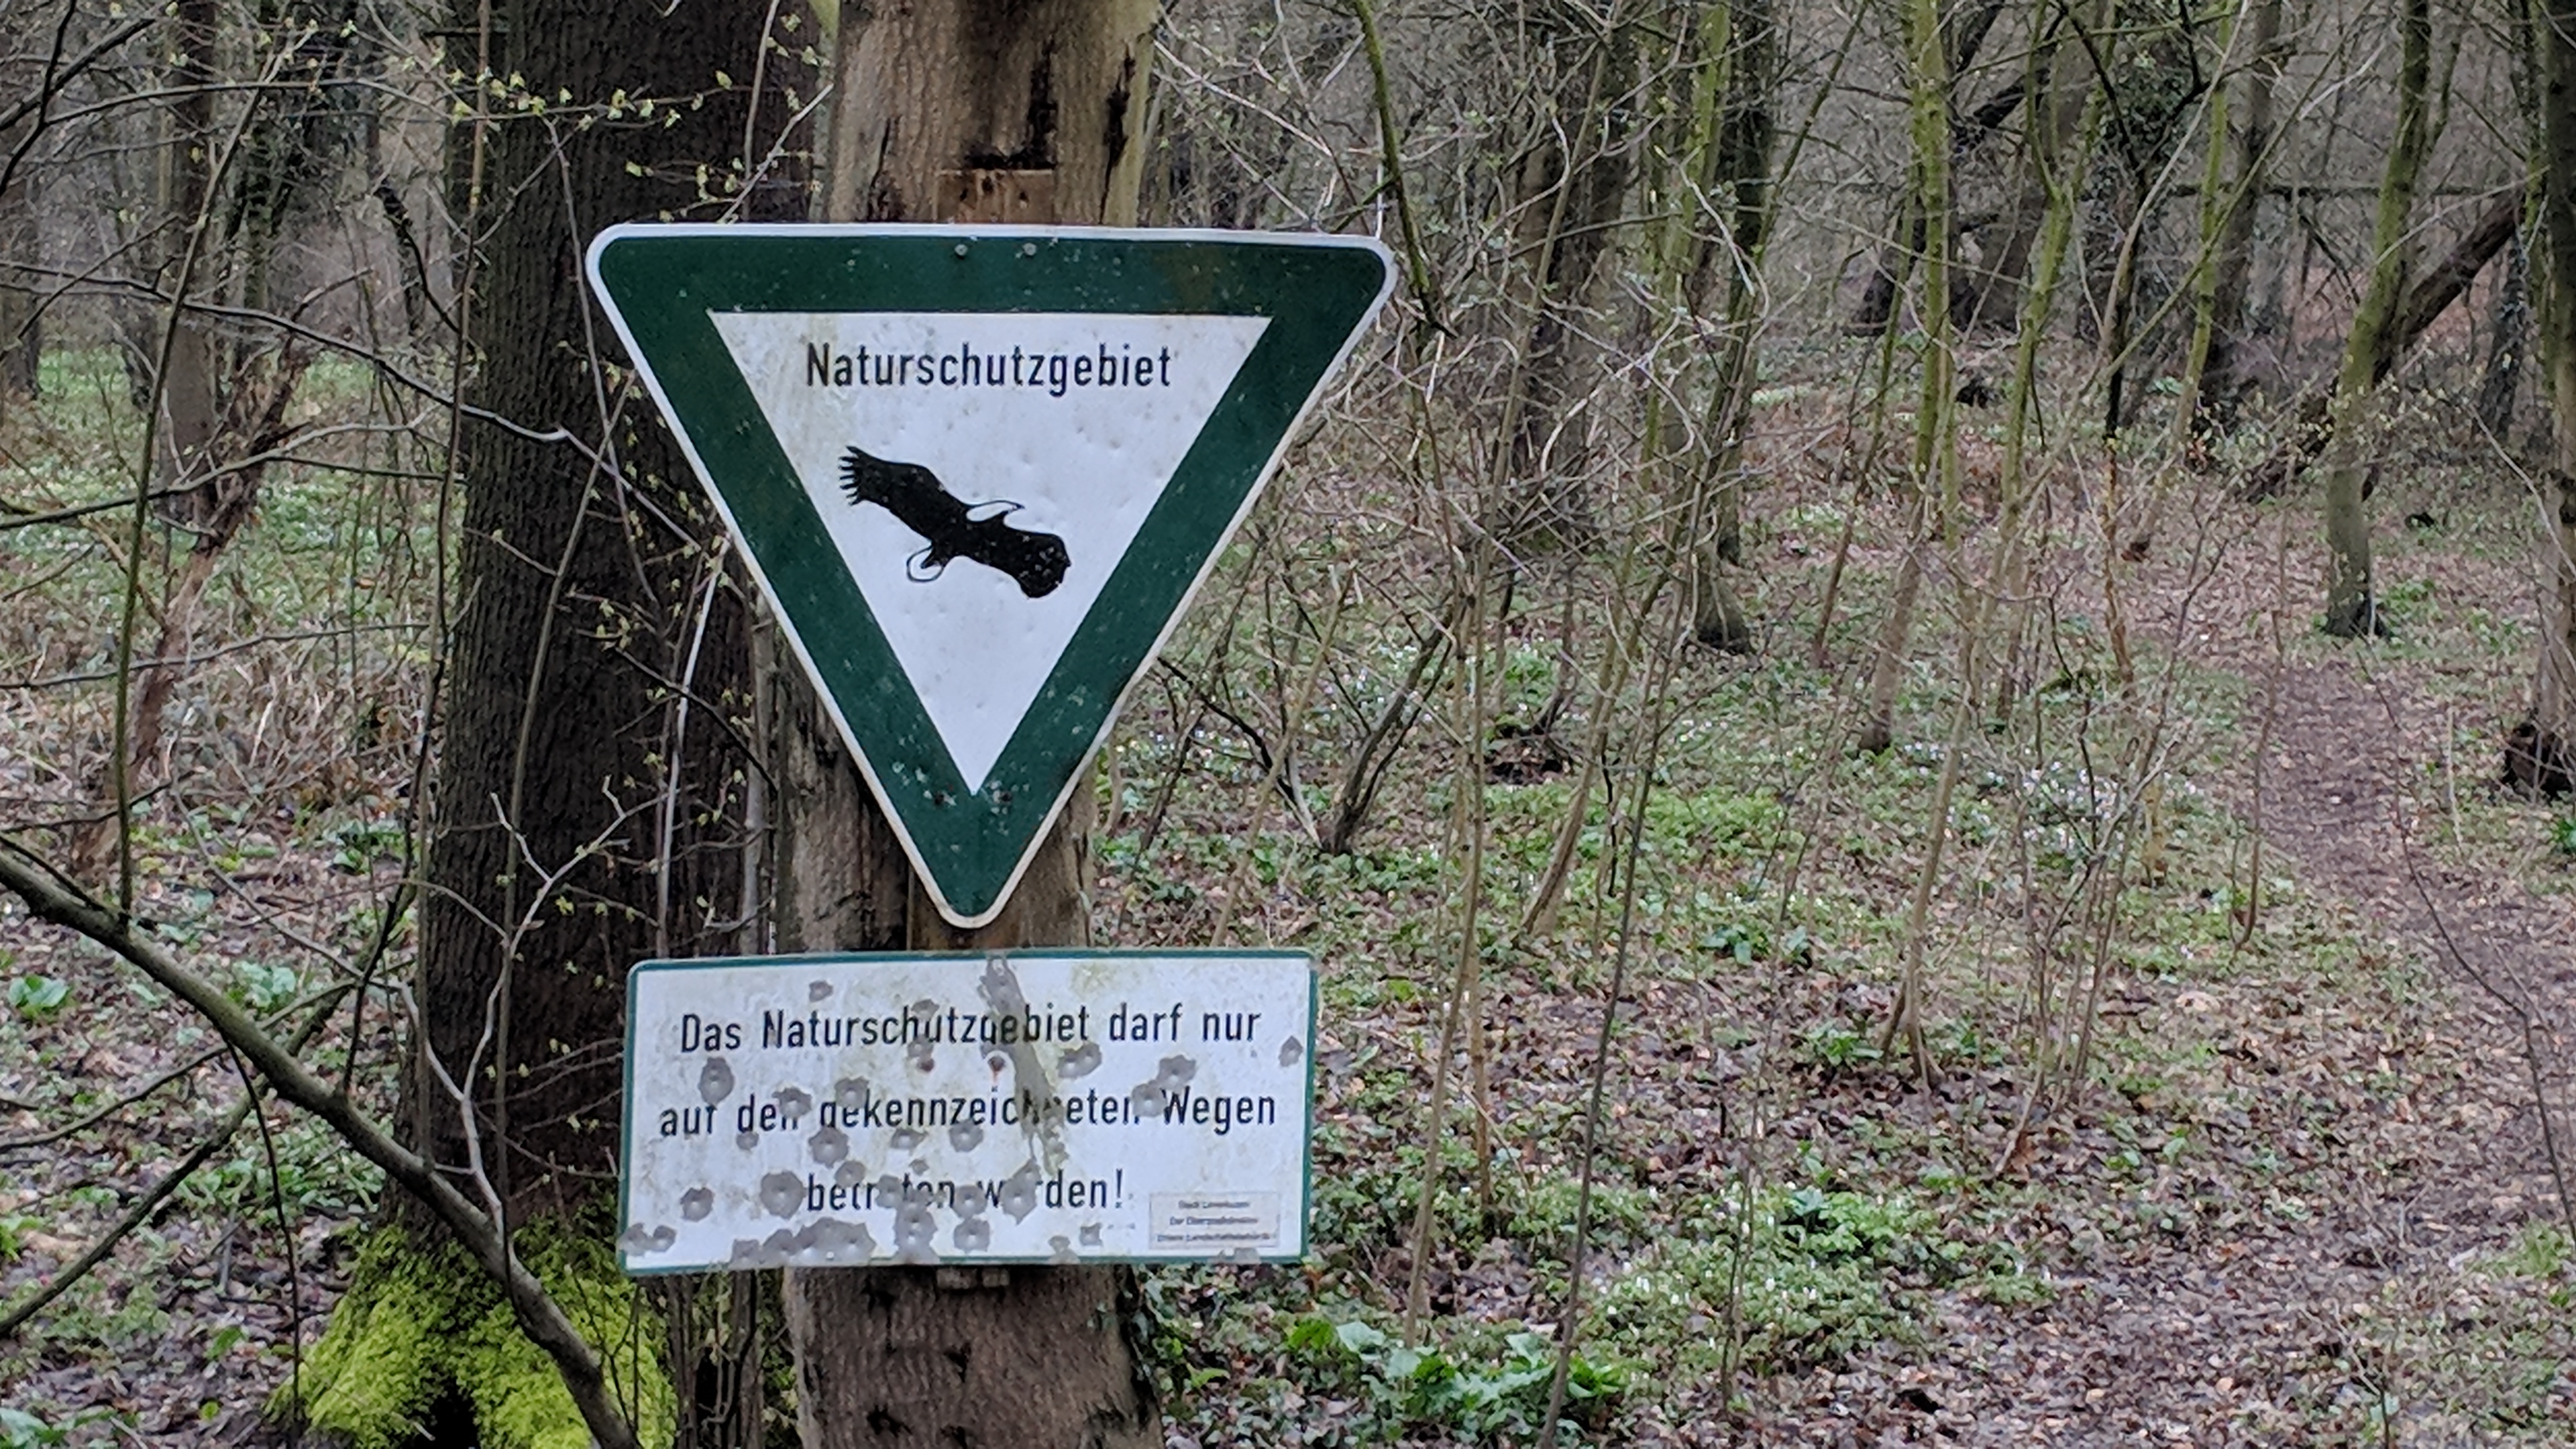 An einem Pfahl ist das Schuld Naturschutzgebiet angebracht. Darunter steht: "Das Naturschutzgebiet darf nur auf den gekennzeichneten Wegen betreten werden. Stadt Leverkusen. Der Oberbürgermeister."